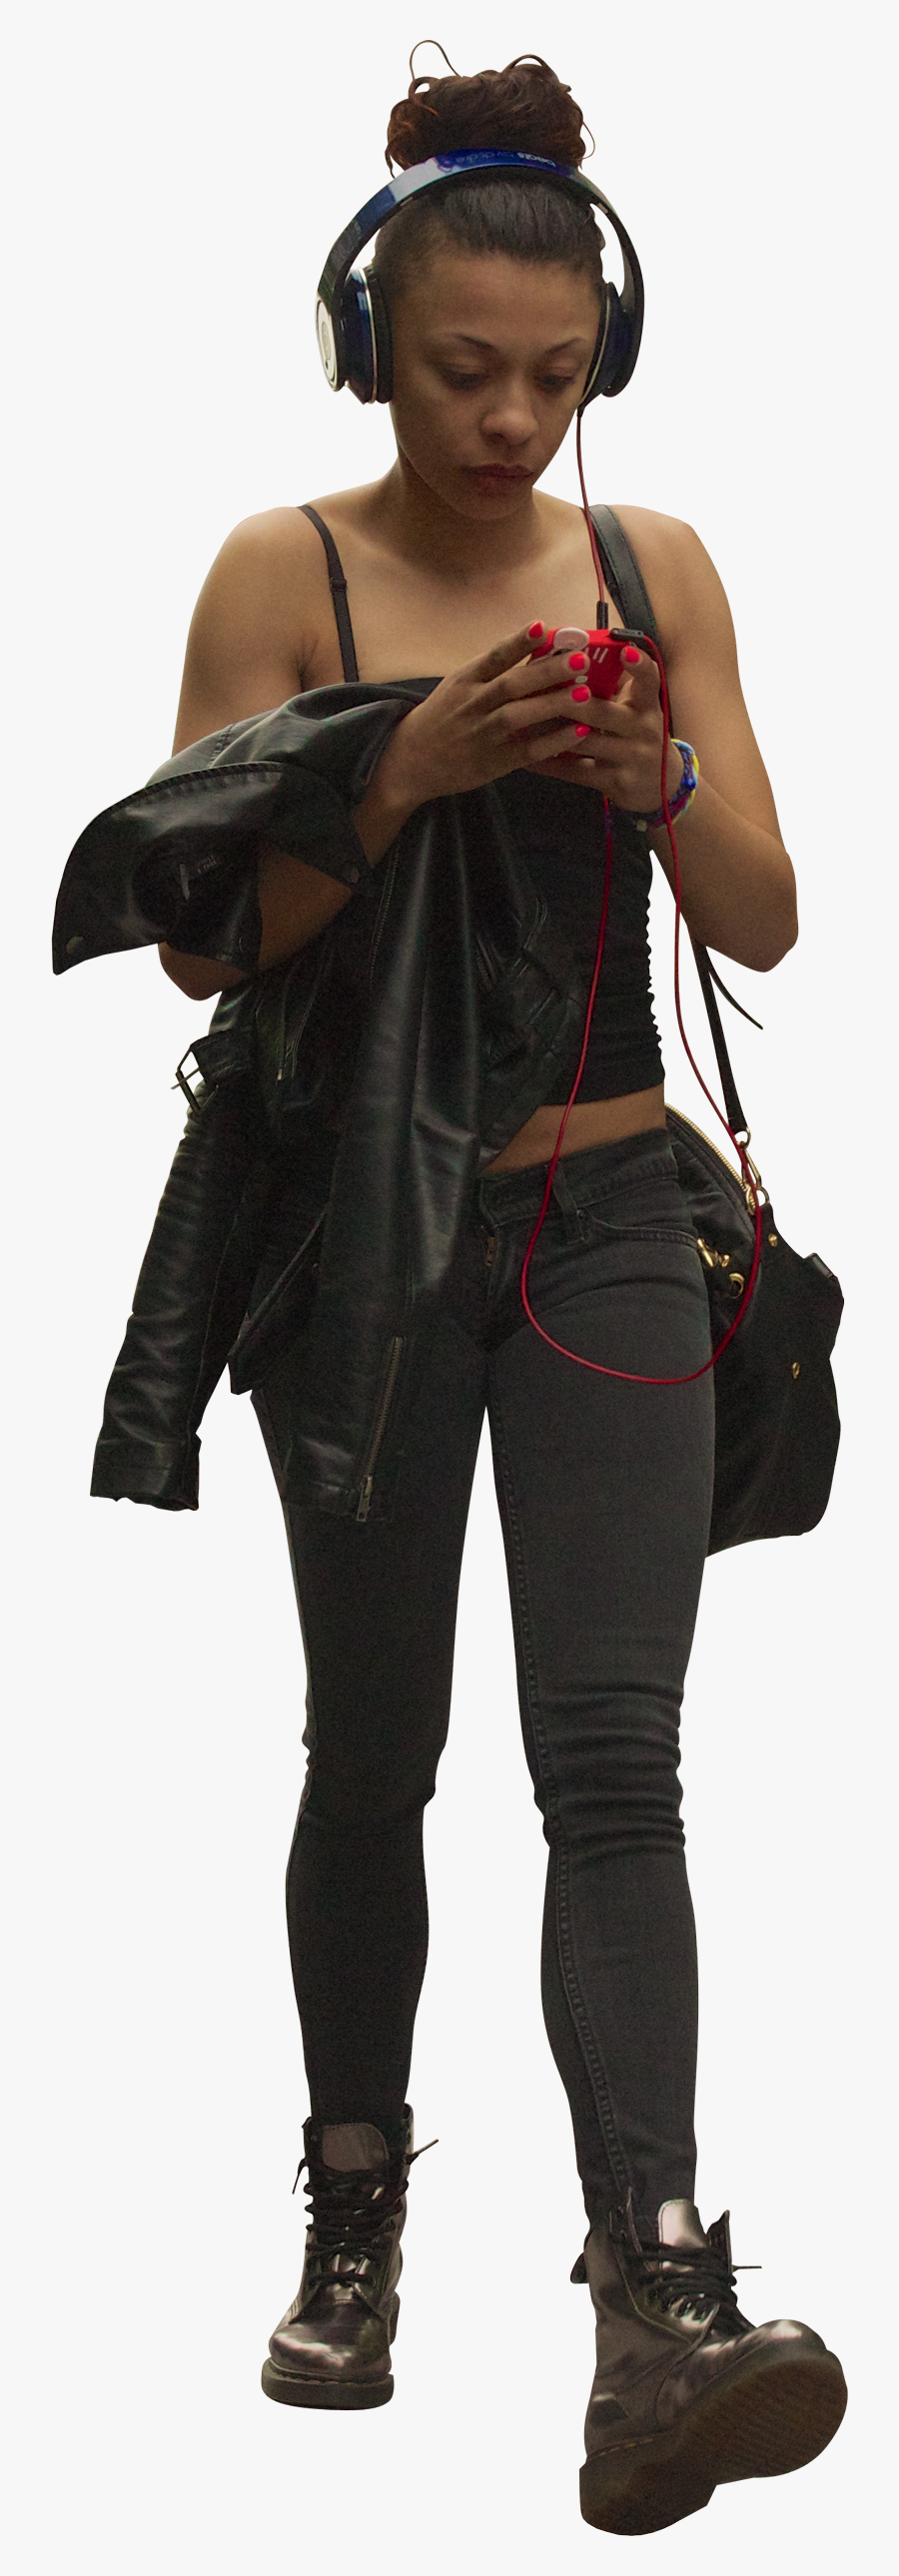 Transparent Woman Walking Clipart - Cut Out Black People Png, Transparent Clipart